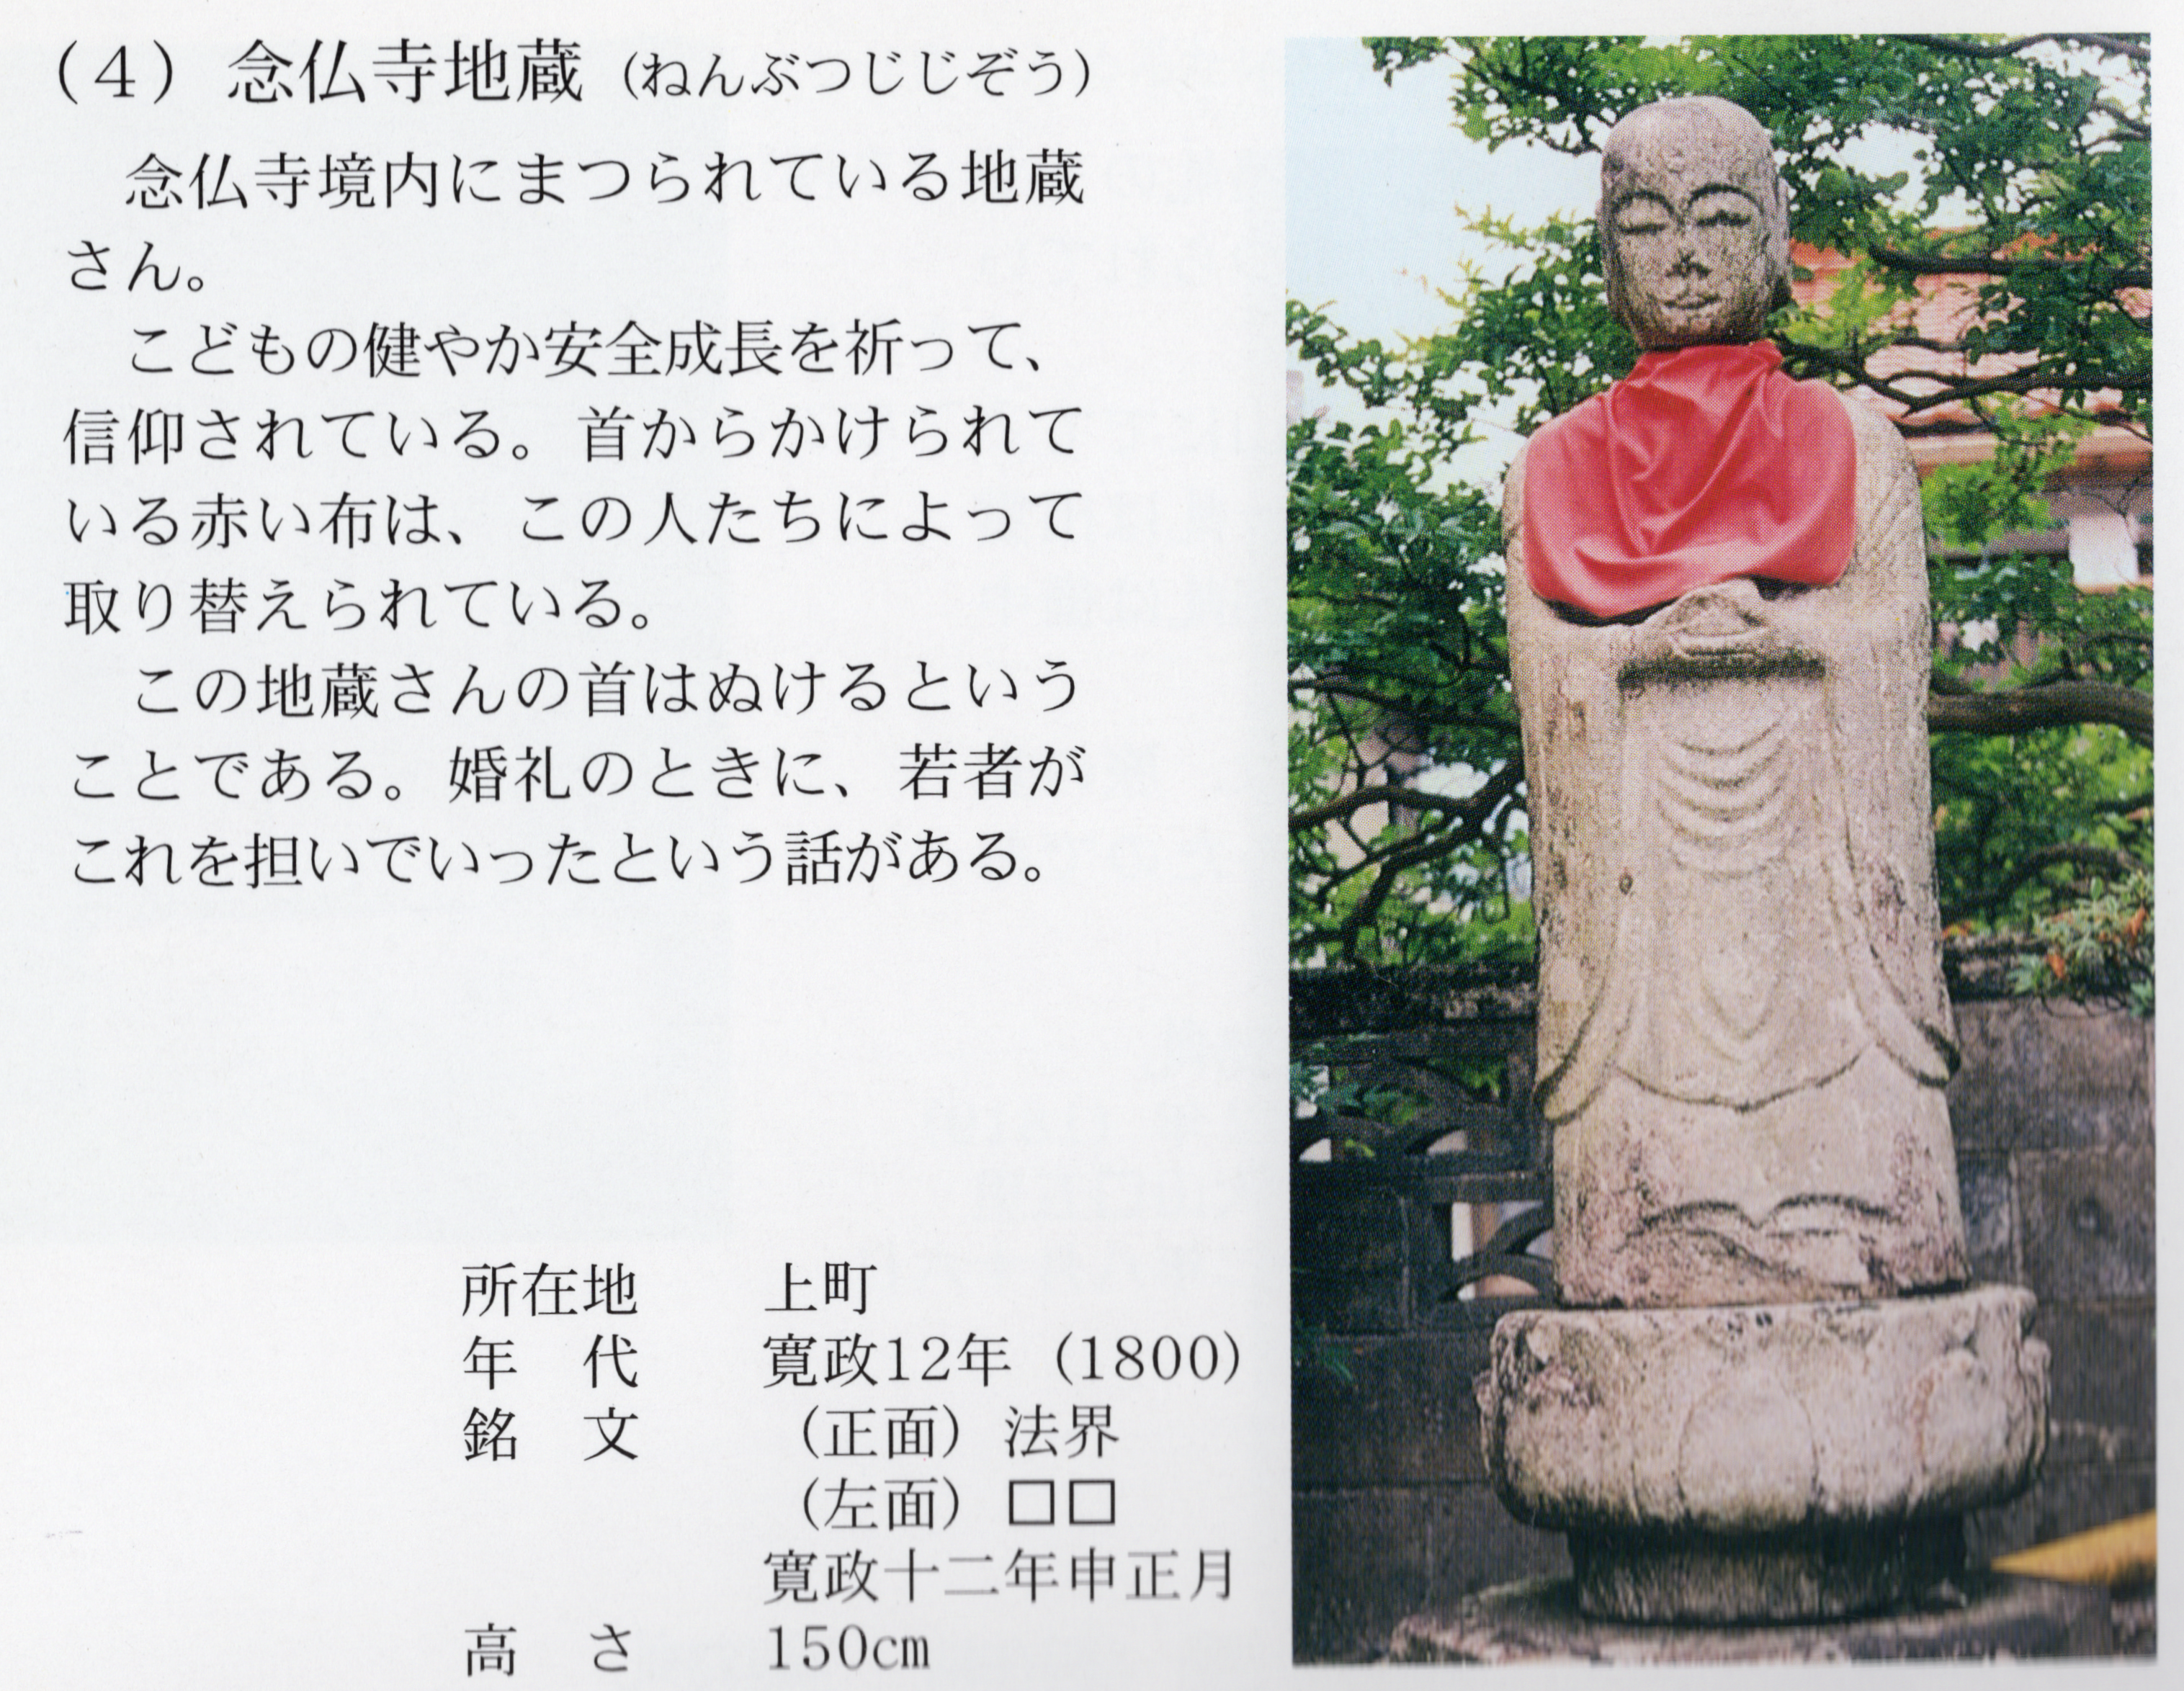 「新庄村石造物」冊子の地蔵菩薩